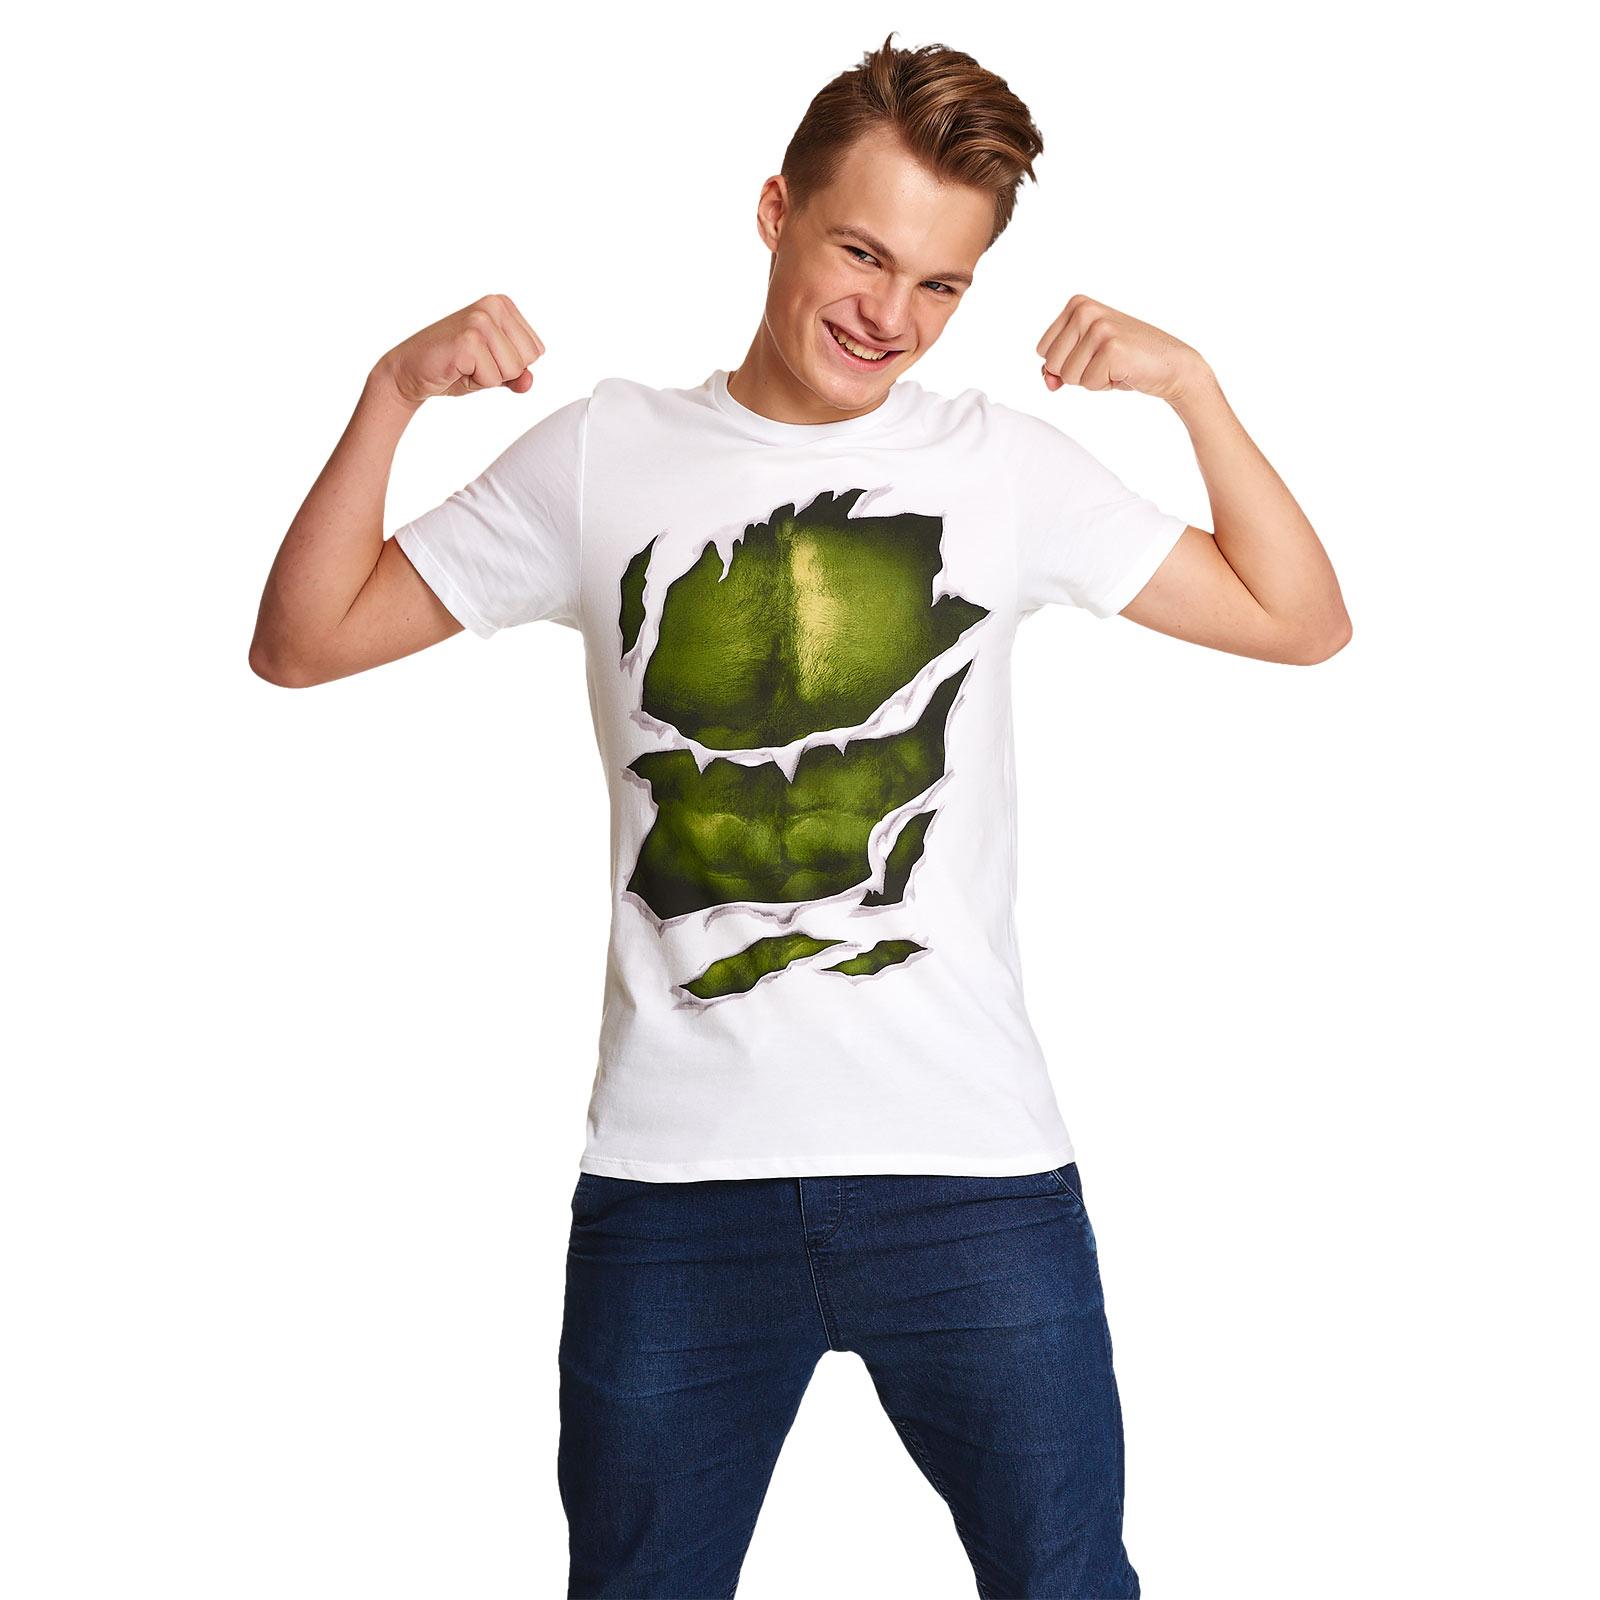 Hulk - T-shirt costume